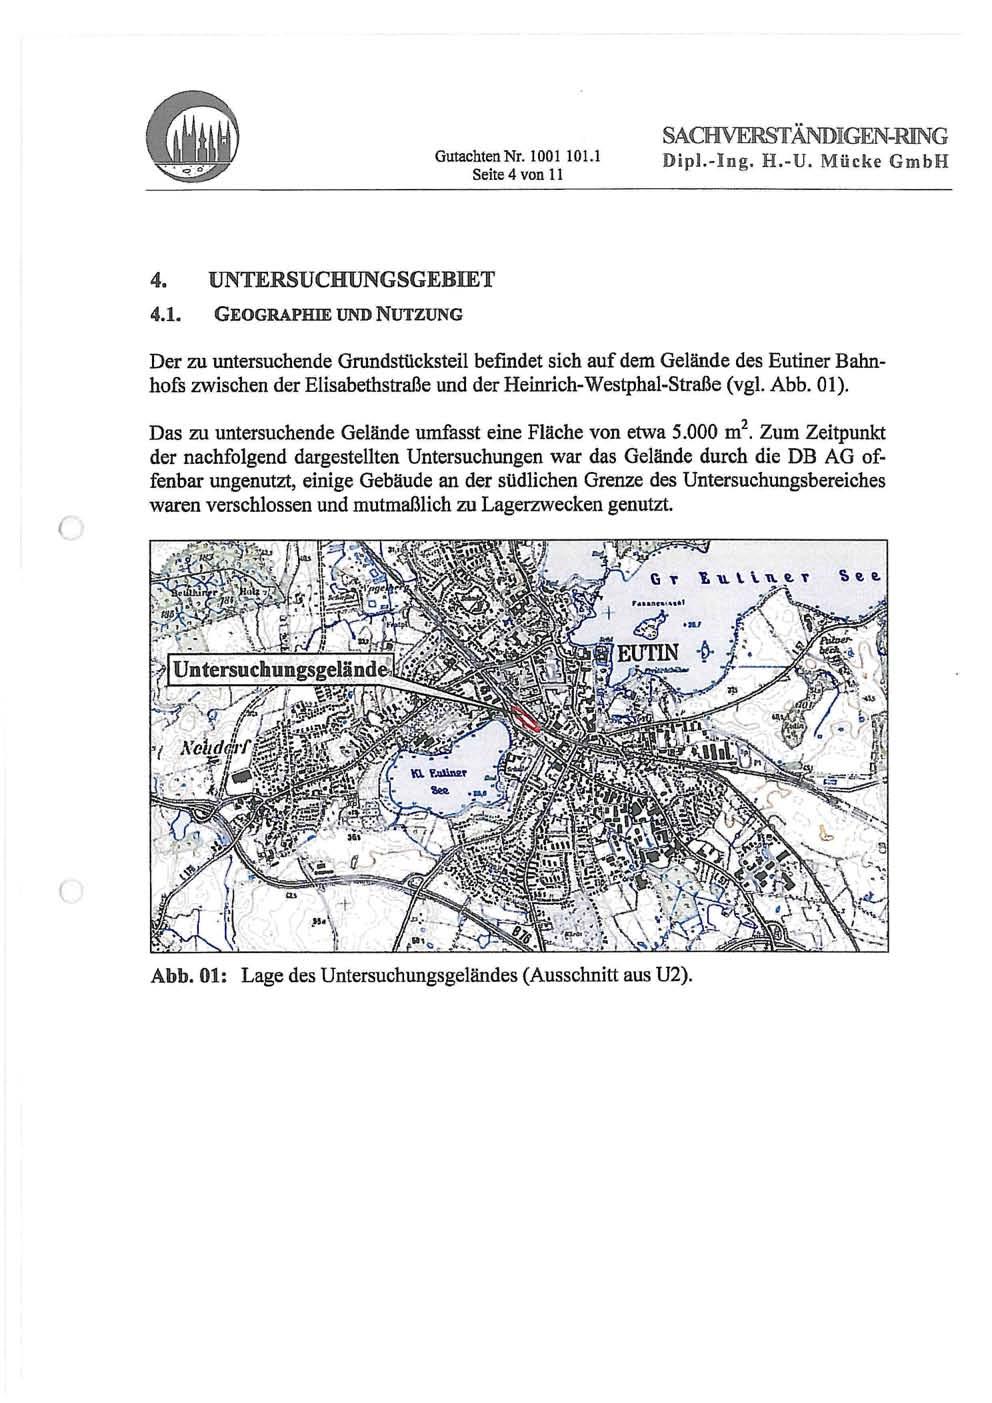 Gutachten Nr. 00 0. Seite 4 von SAaW RSTÄNDIGEN= ING Dipl.-Ing. H.-U. Micke GmbH 4» UNTEMSUCHUNGSGEBIET 4.